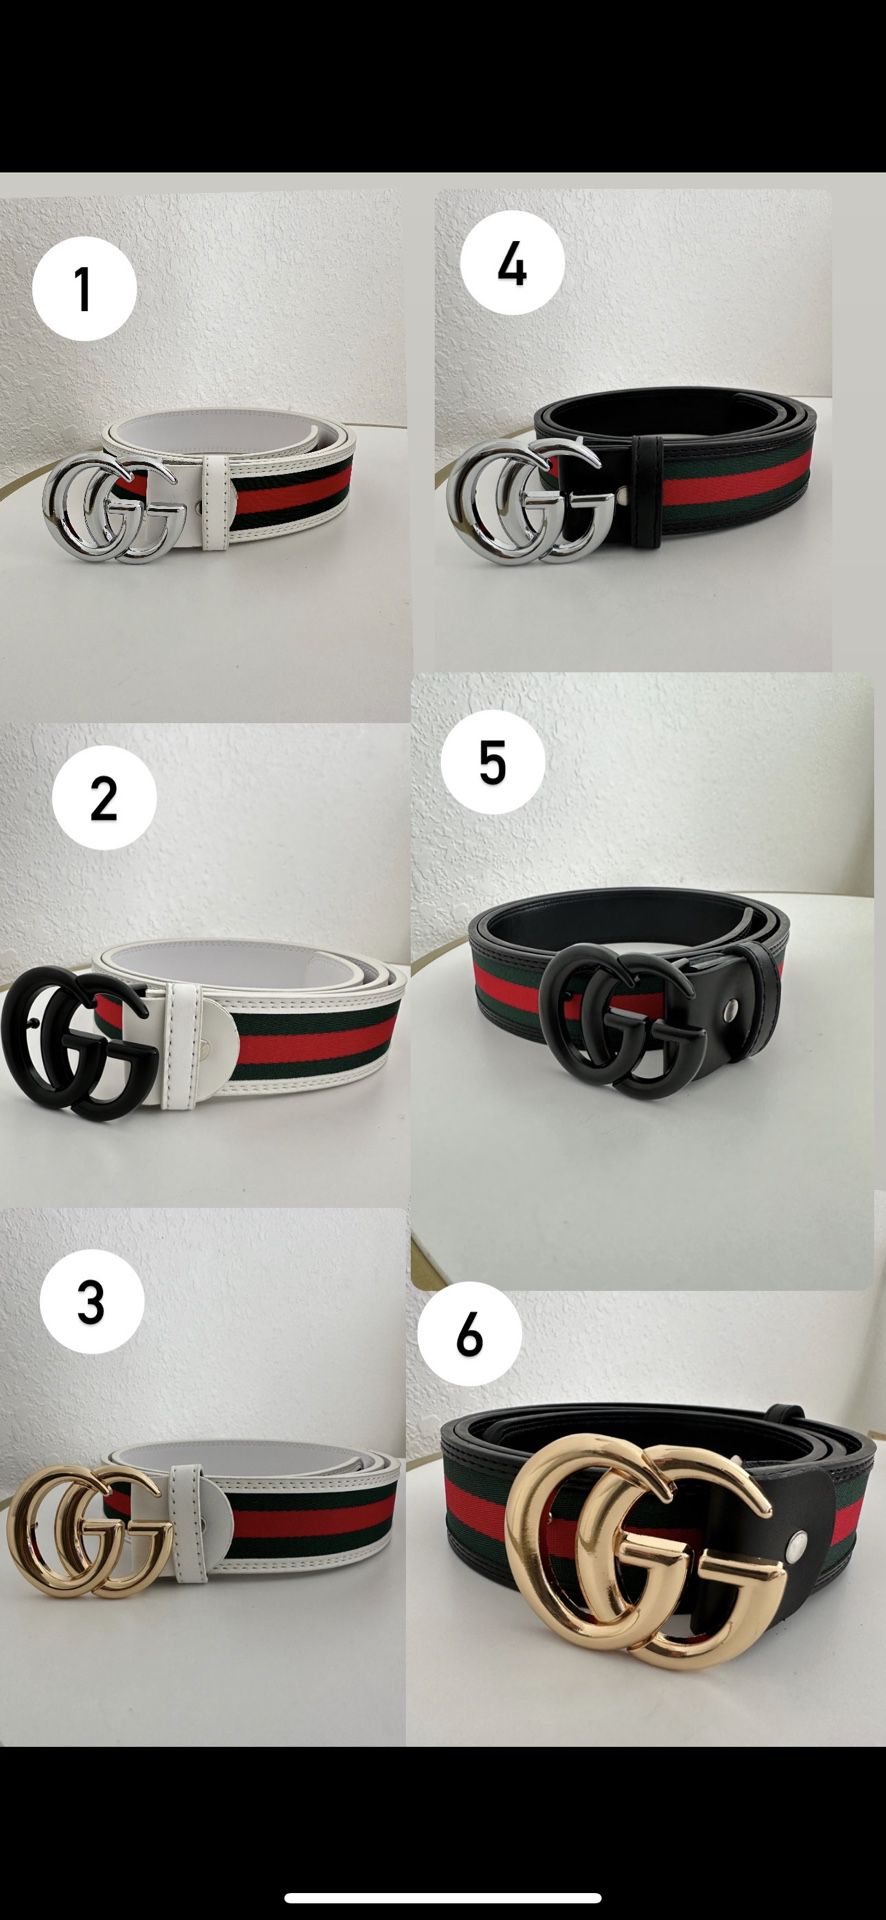 belts for men